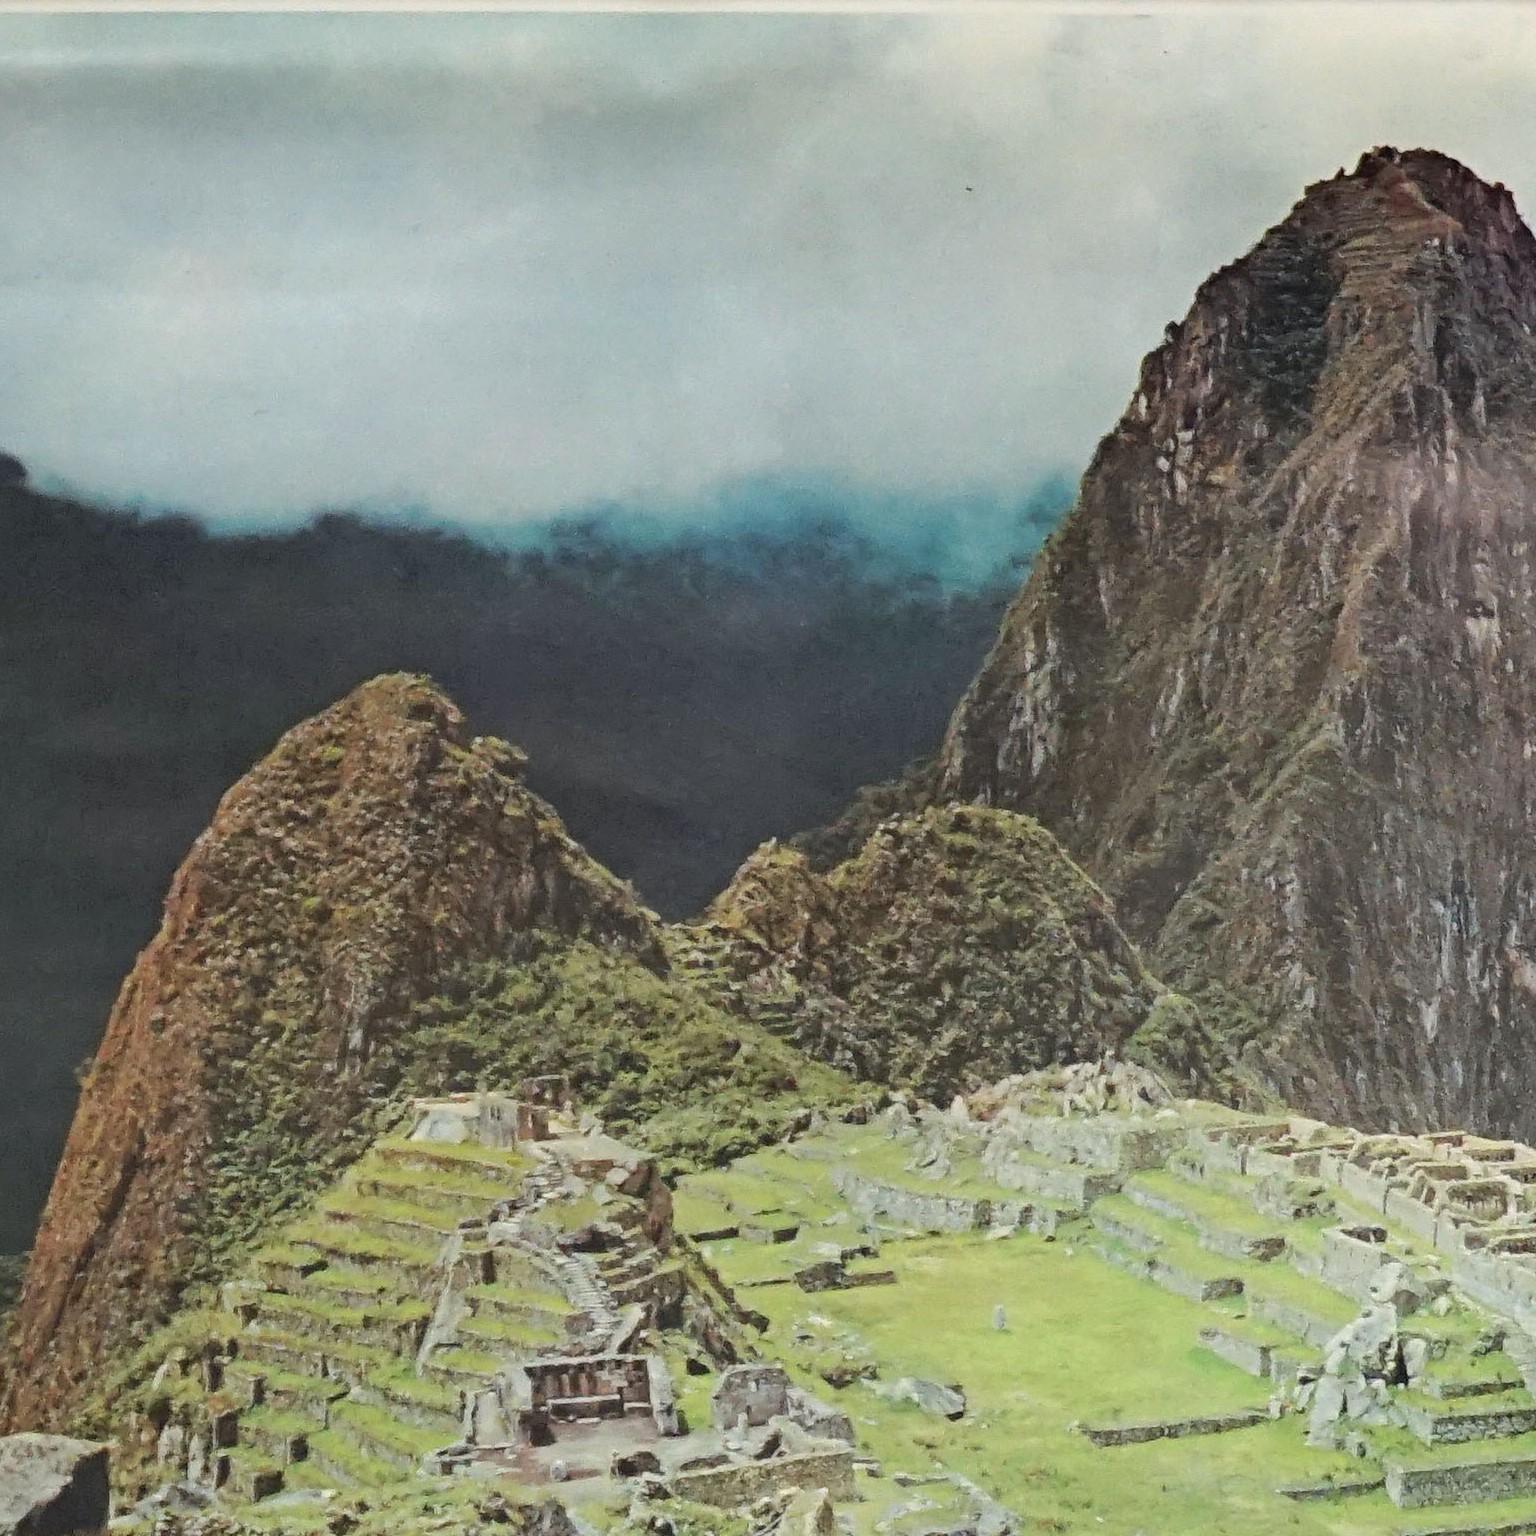 Macchu Picchu Inca City Peru, Vintage-Fotoplakat, Rollbare Wandtafel

Das Pull-Down-Fotoposter zeigt die mystische Inkastadt Macchu Picchu in Peru. Herausgegeben von Westermann. Farbenfroher Druck auf mit Leinwand verstärktem